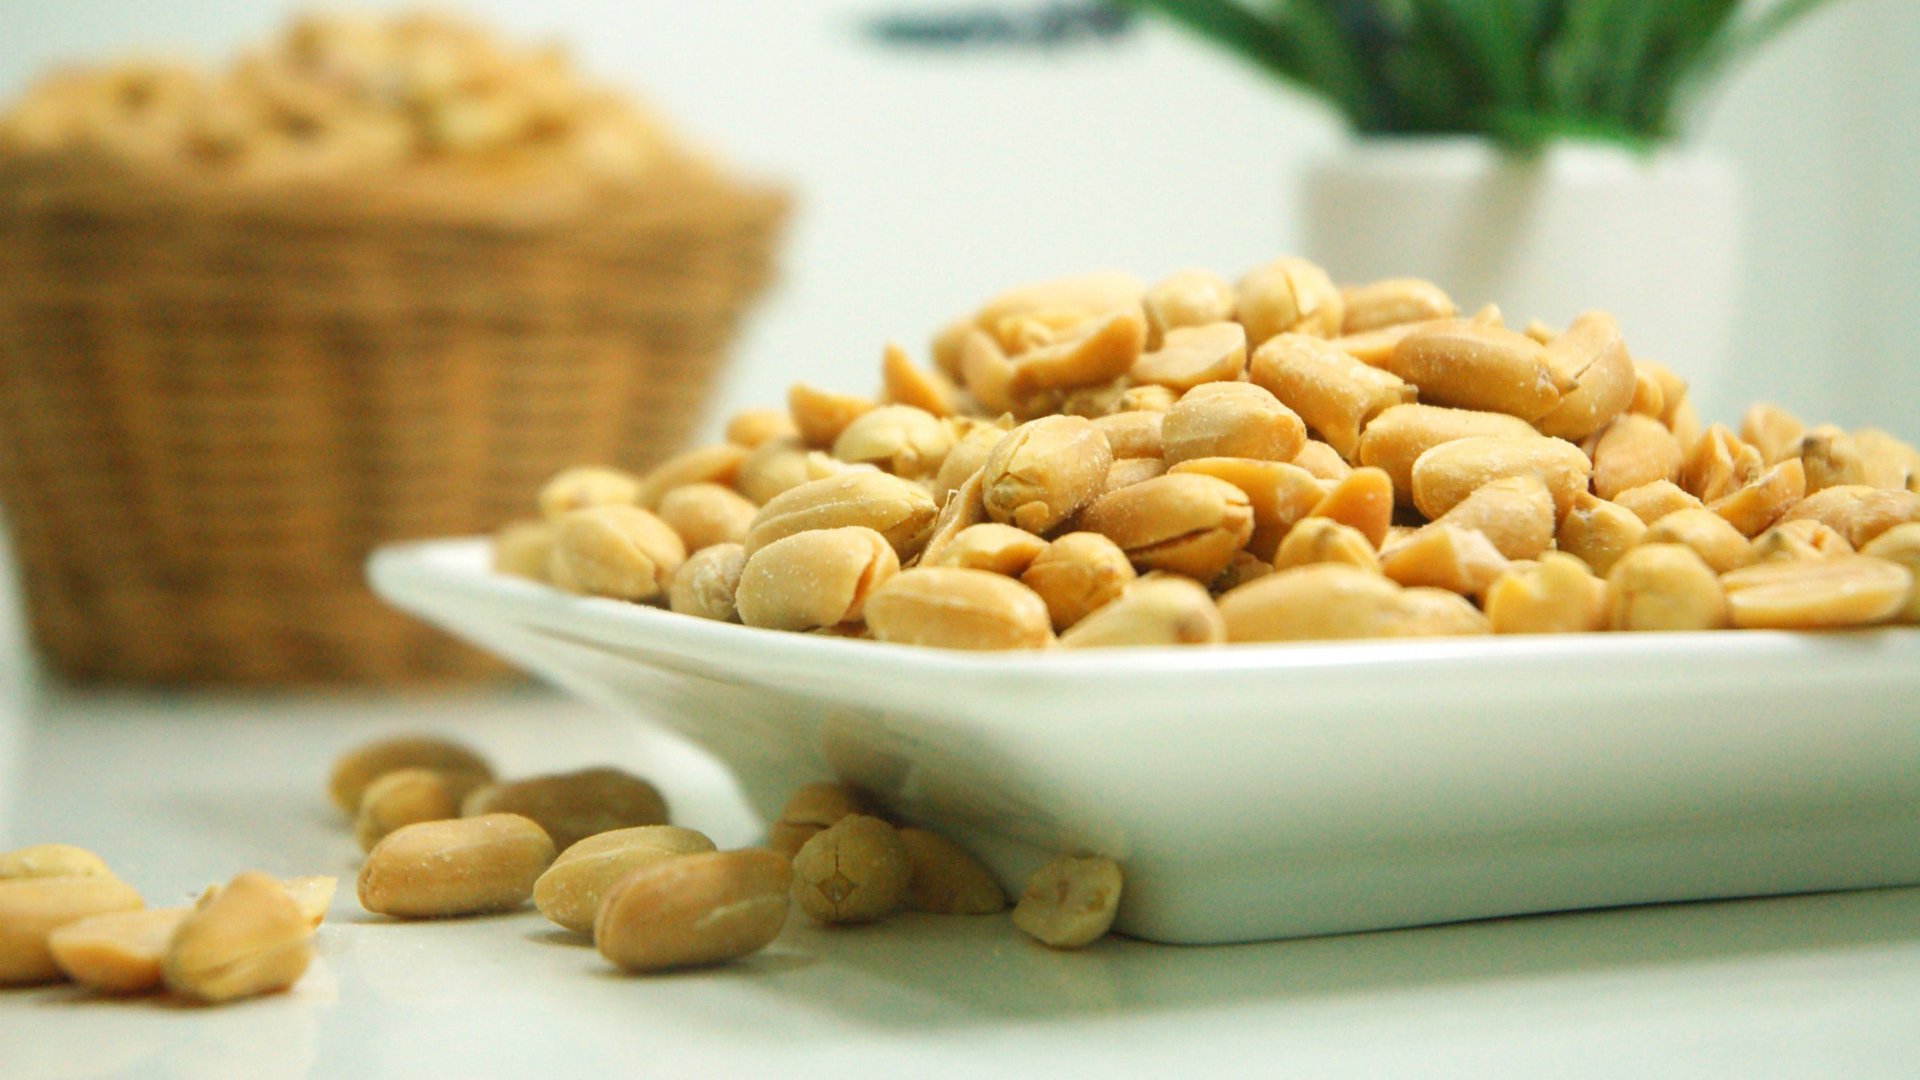 Foto de capa do artigo "Comer amendoim já na infância pode reduzir riscos de alergia"